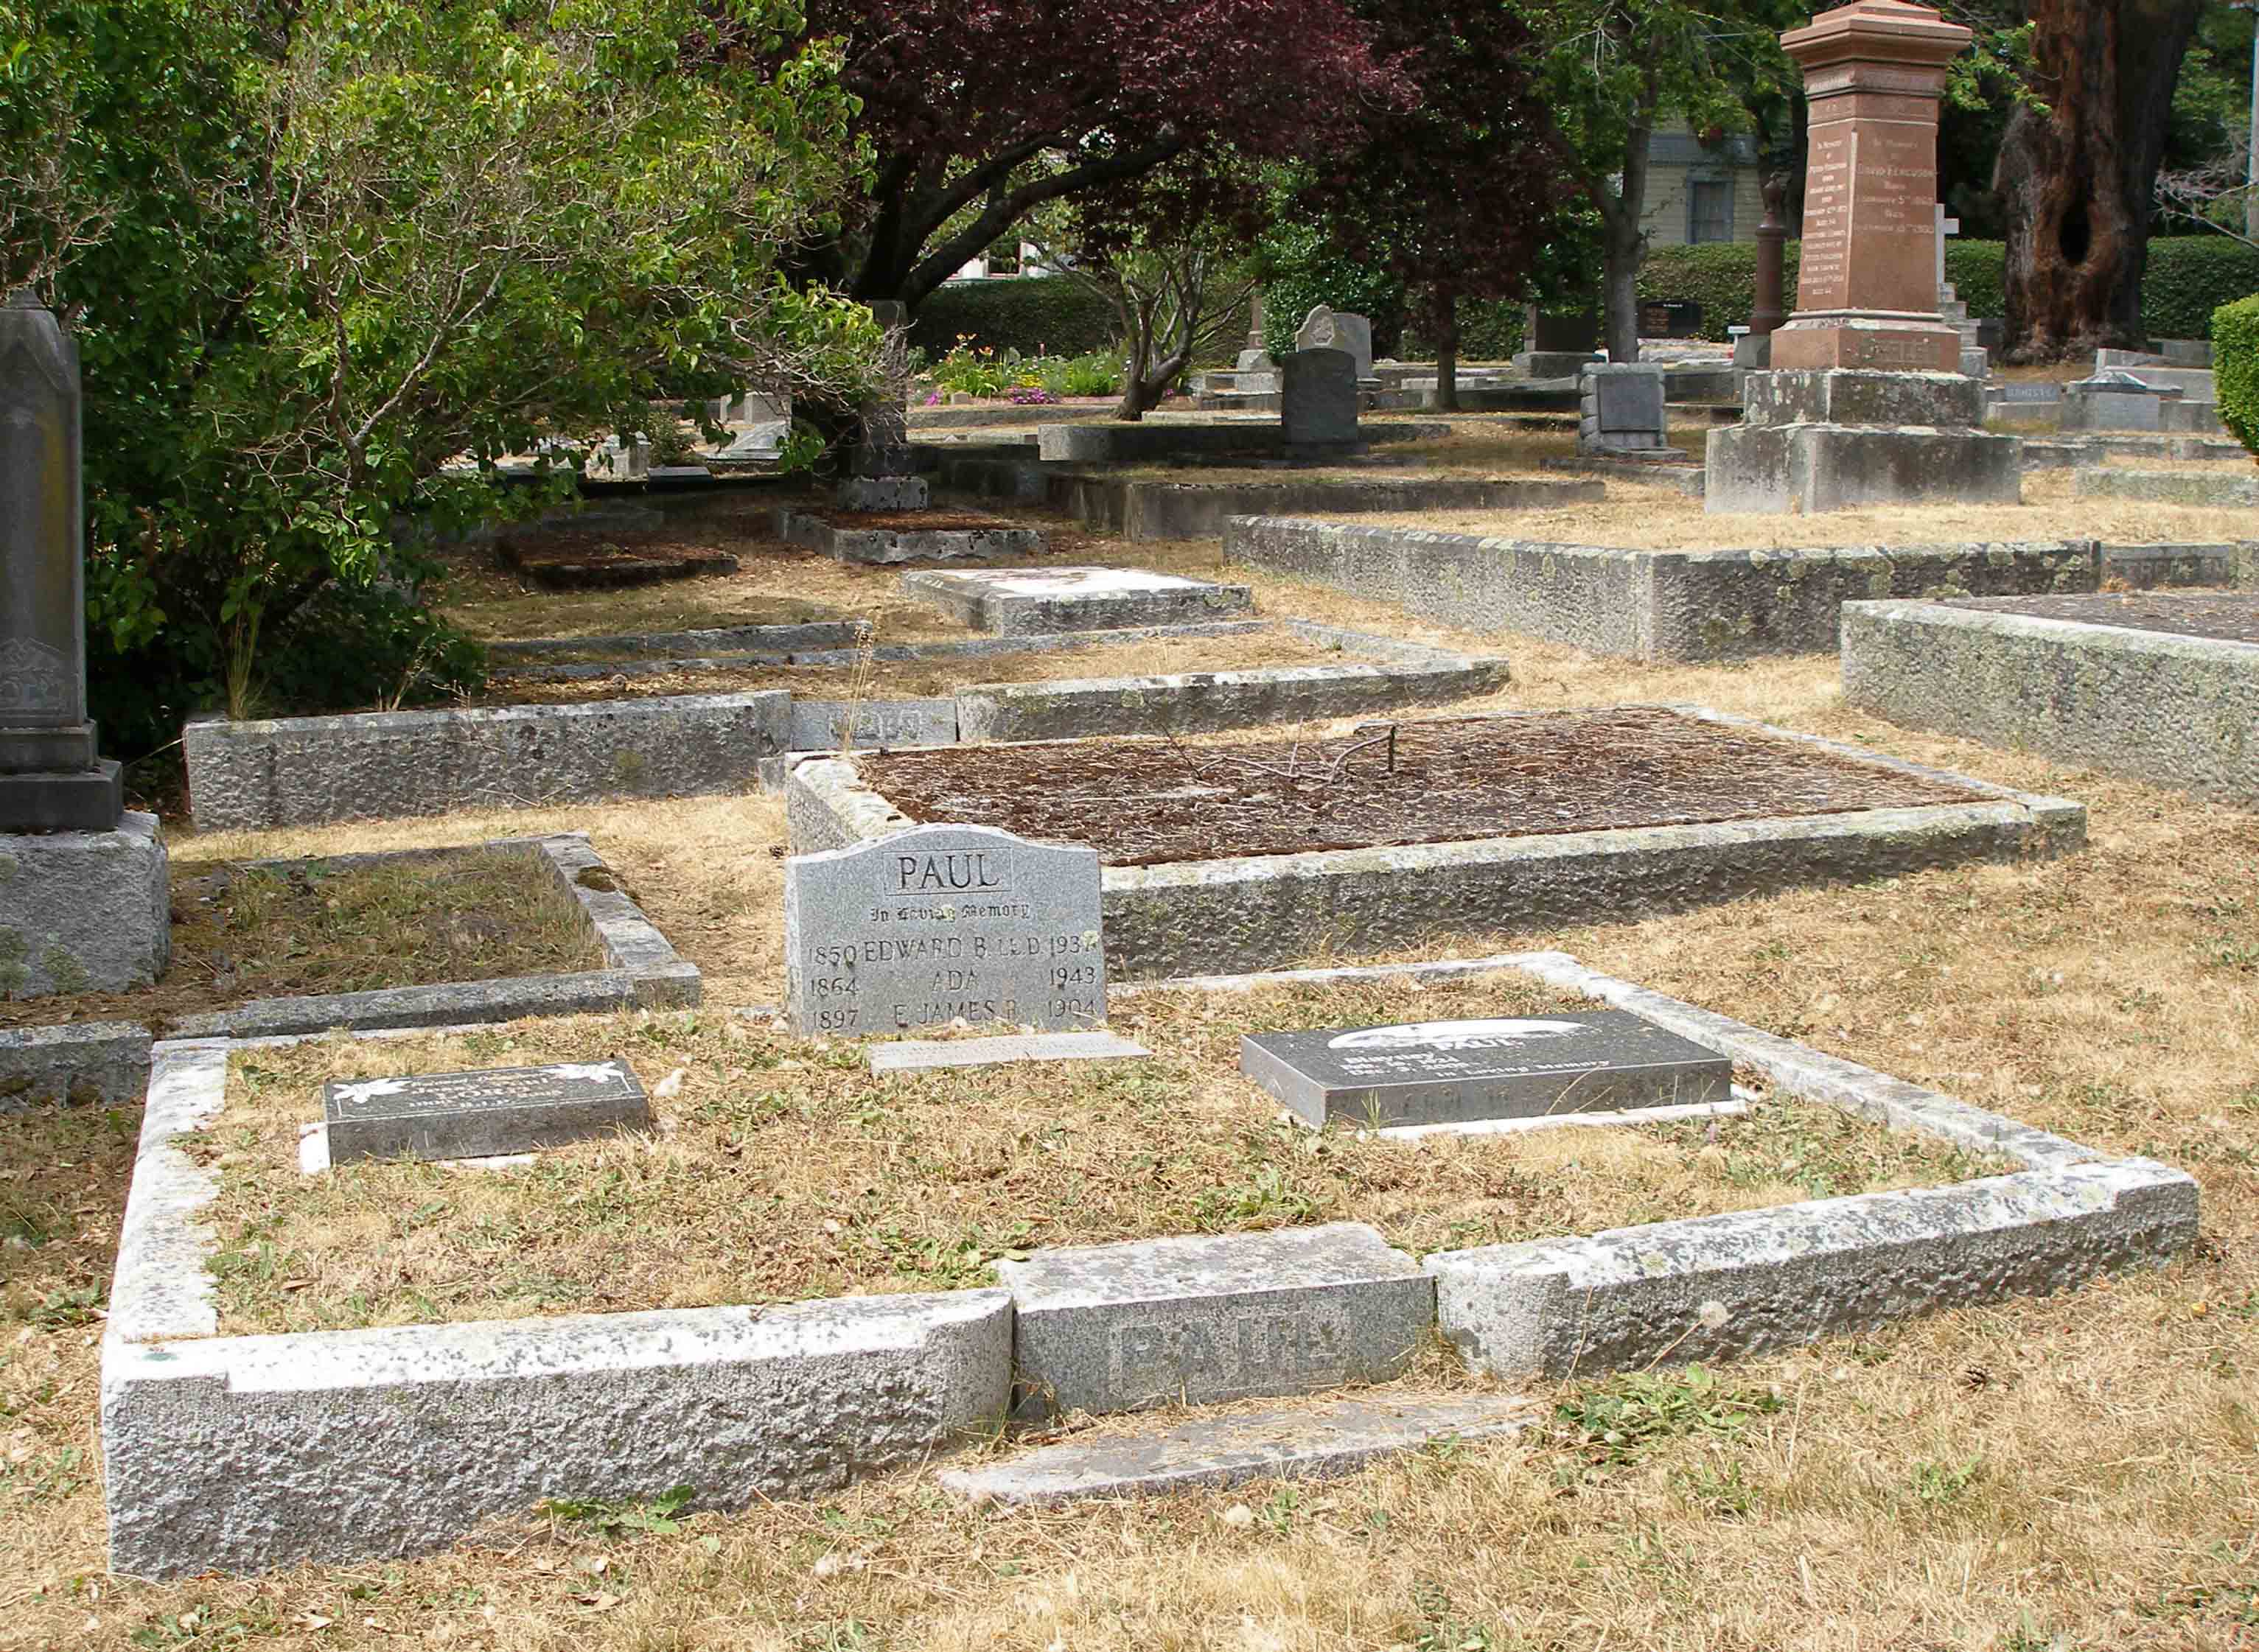 Edward Burness Paul family burial plot